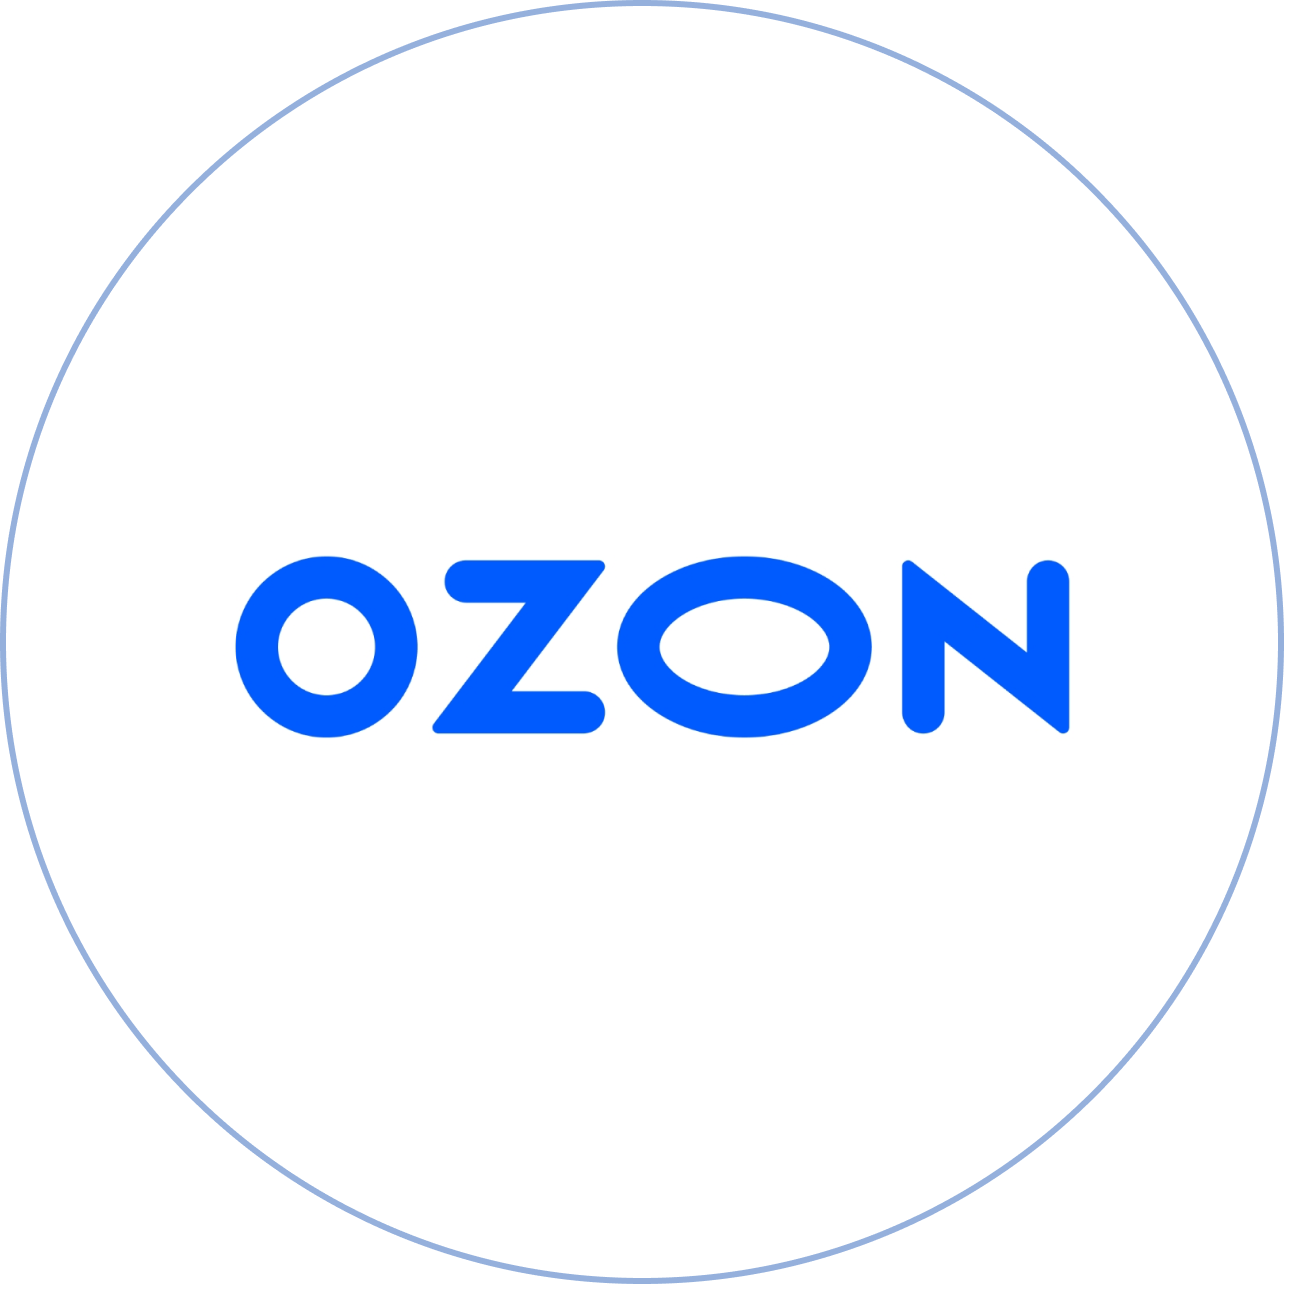 Озон ру заказы. Озон логотип. Магазин Озон логотип. Логотип Озон без фона. Надпись Озон.